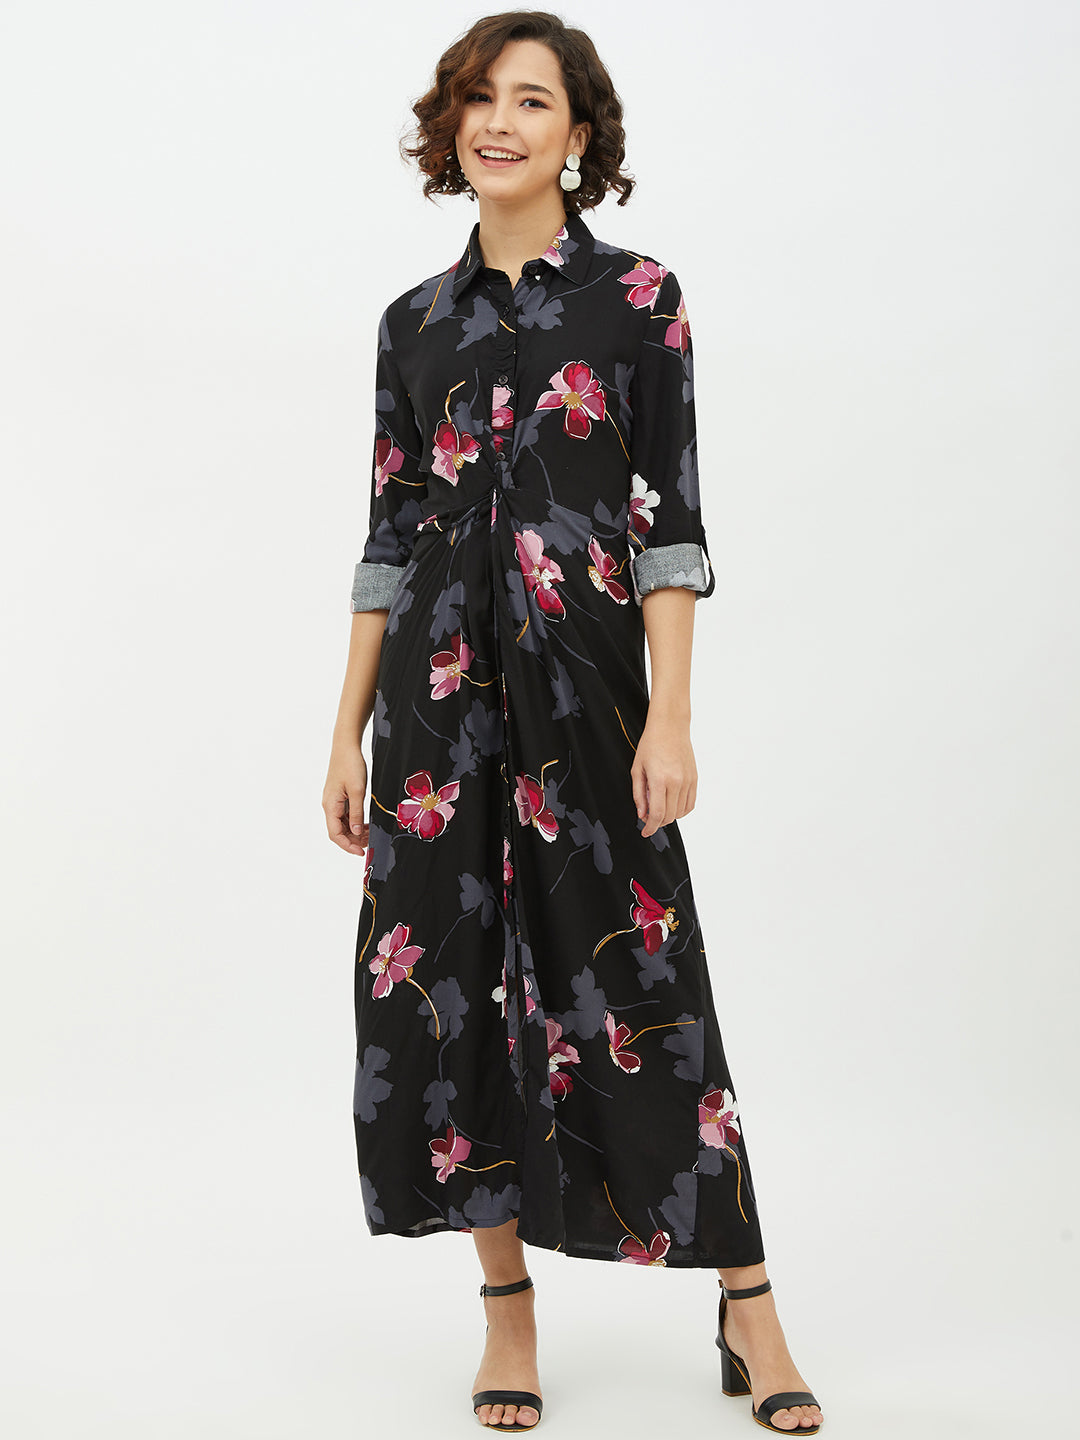 Women's Floral Print Cotton Long Dress - StyleStone